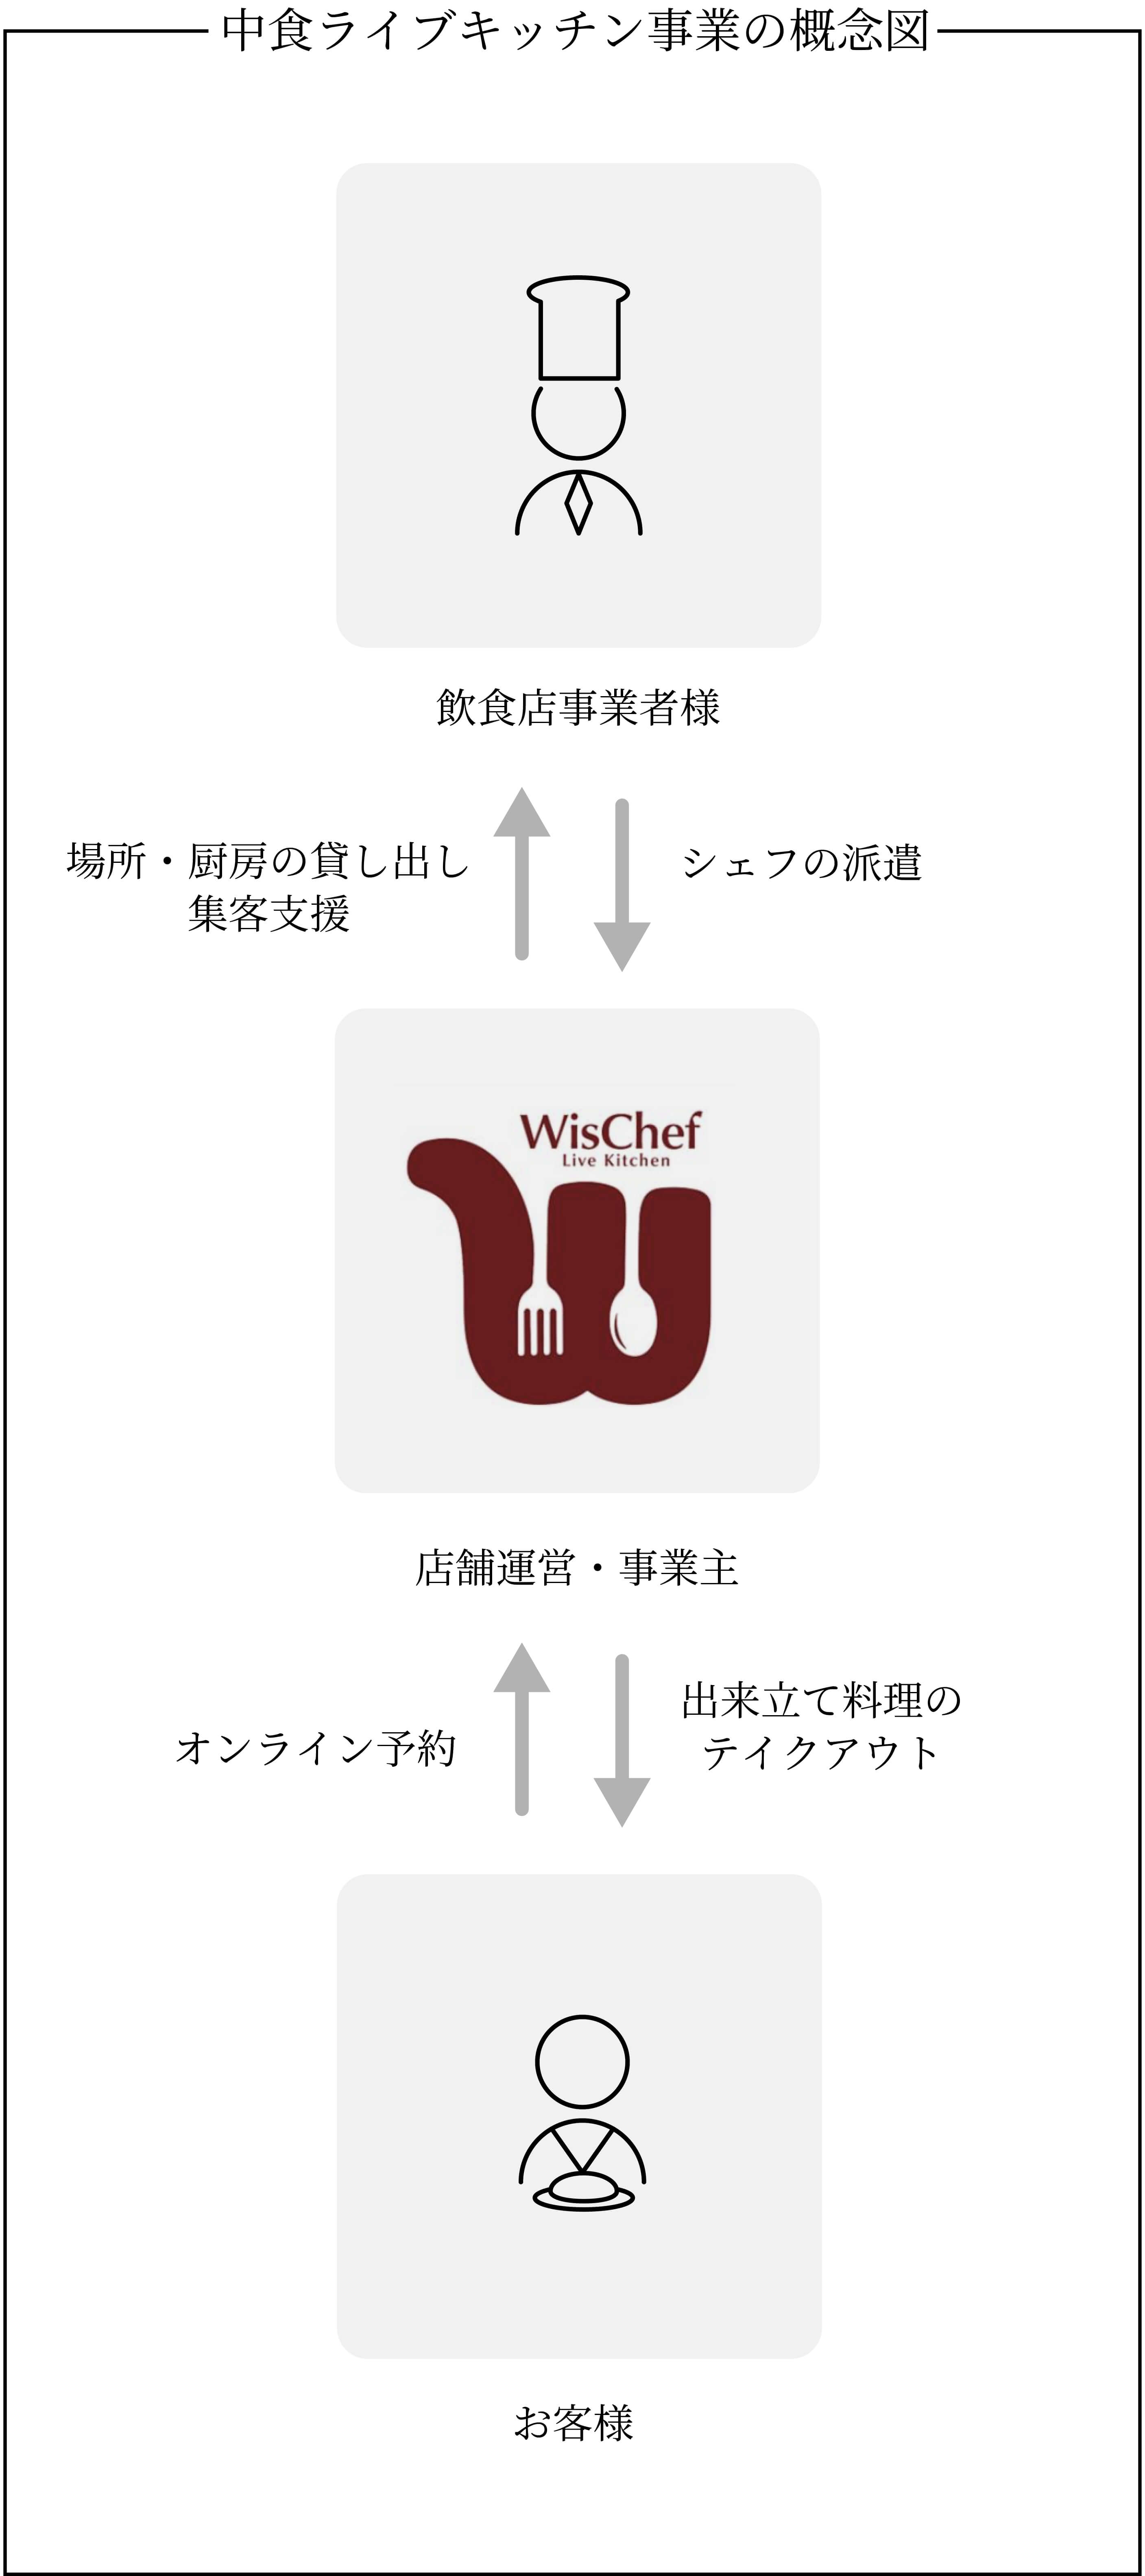 中食ライブキッチン事業の概念図